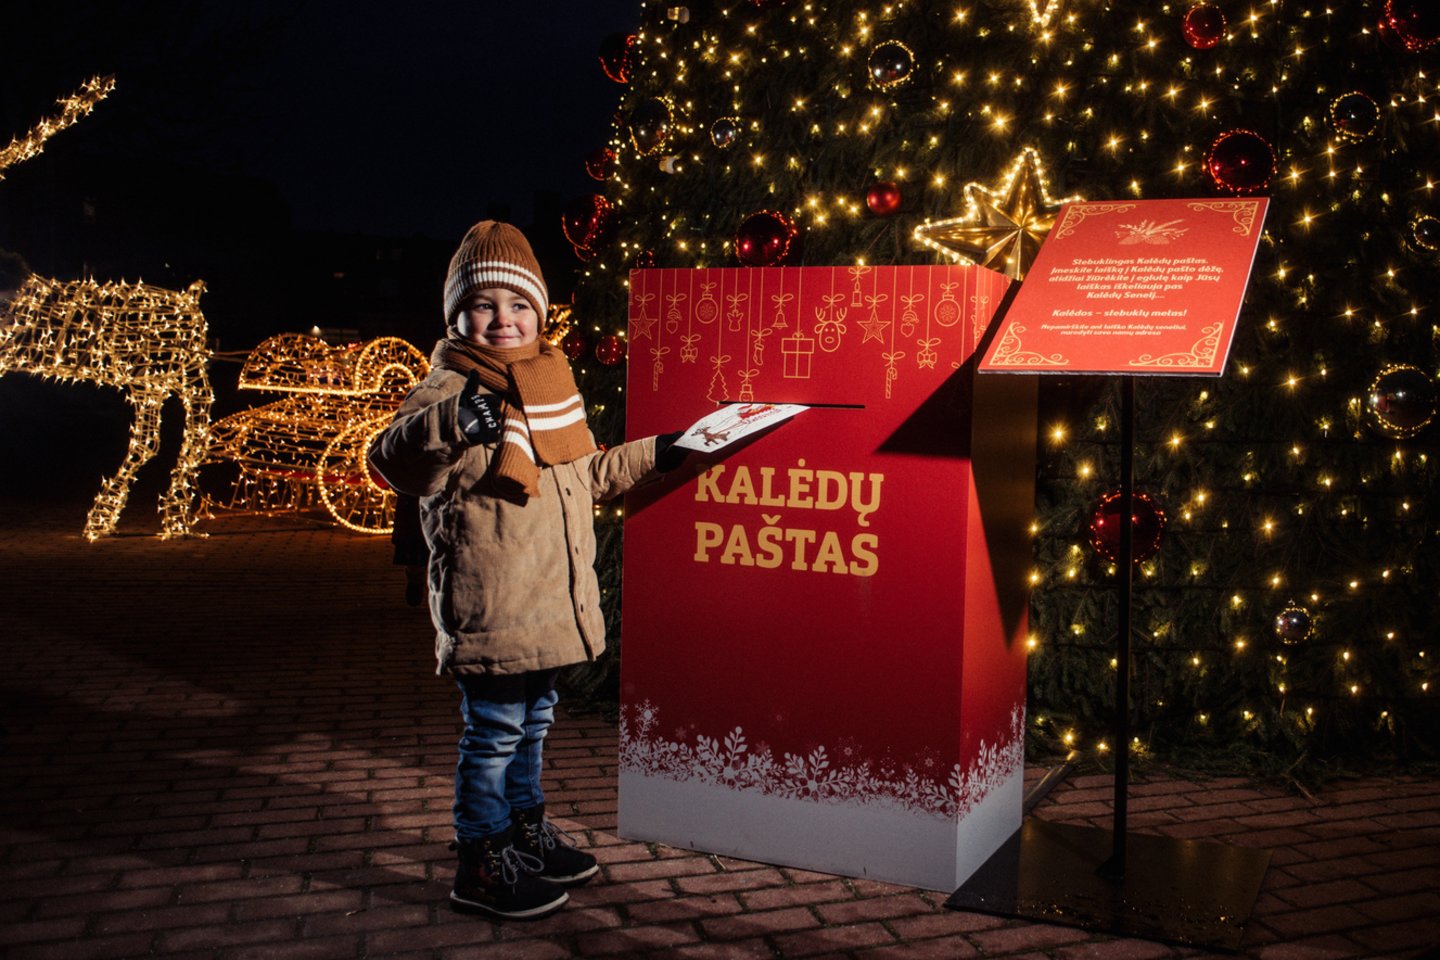  Kalėdas Kretingos rajone pasitikti kvies šimtai nykštukų.<br> Pranešimo spaudai nuotr.